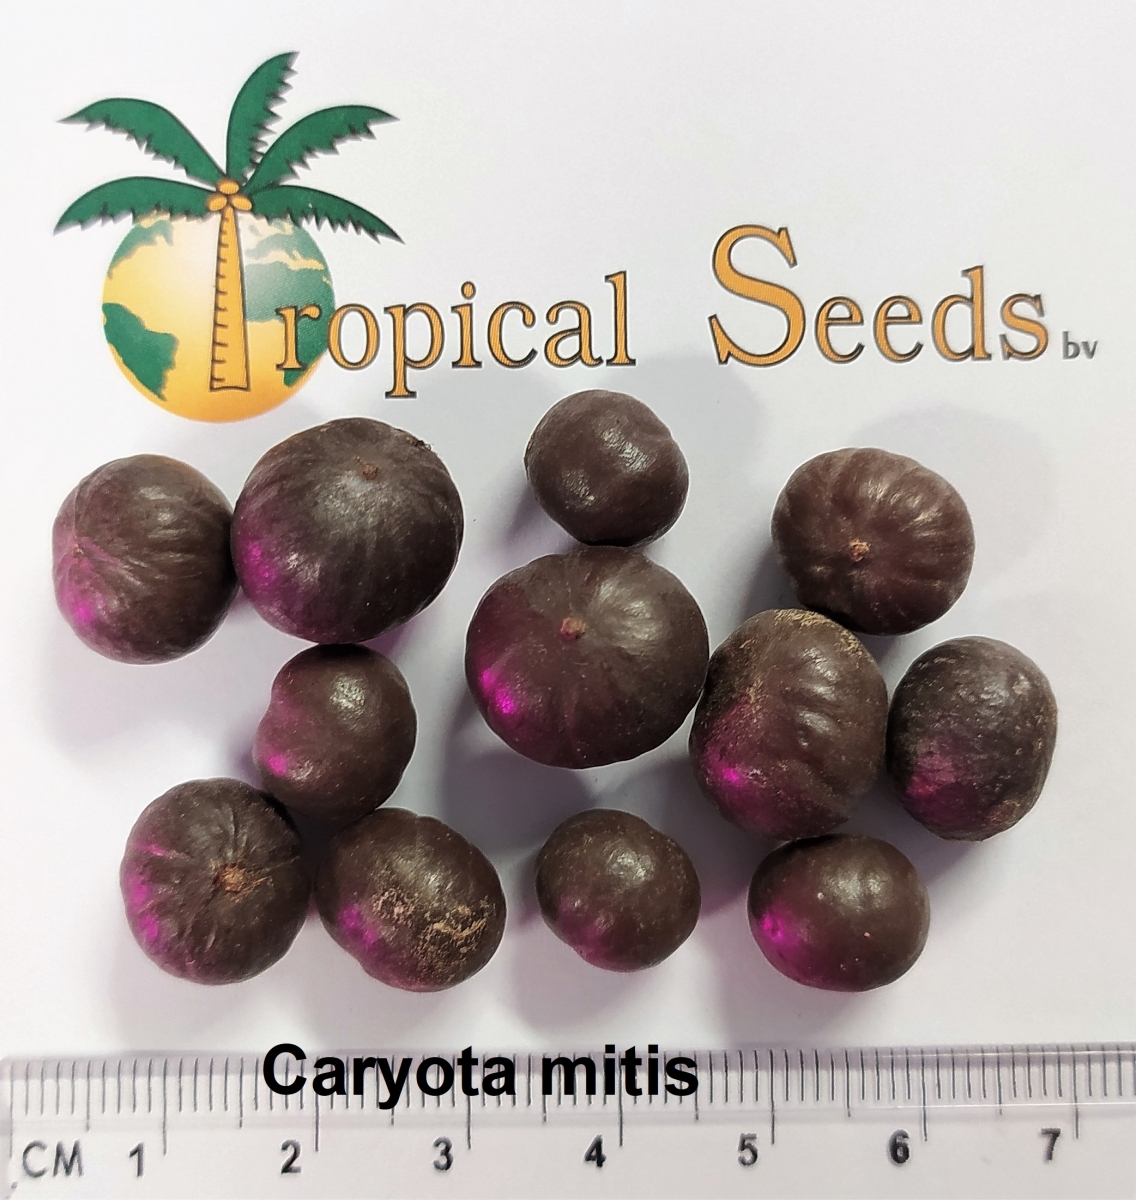 Caryota mitis 种子